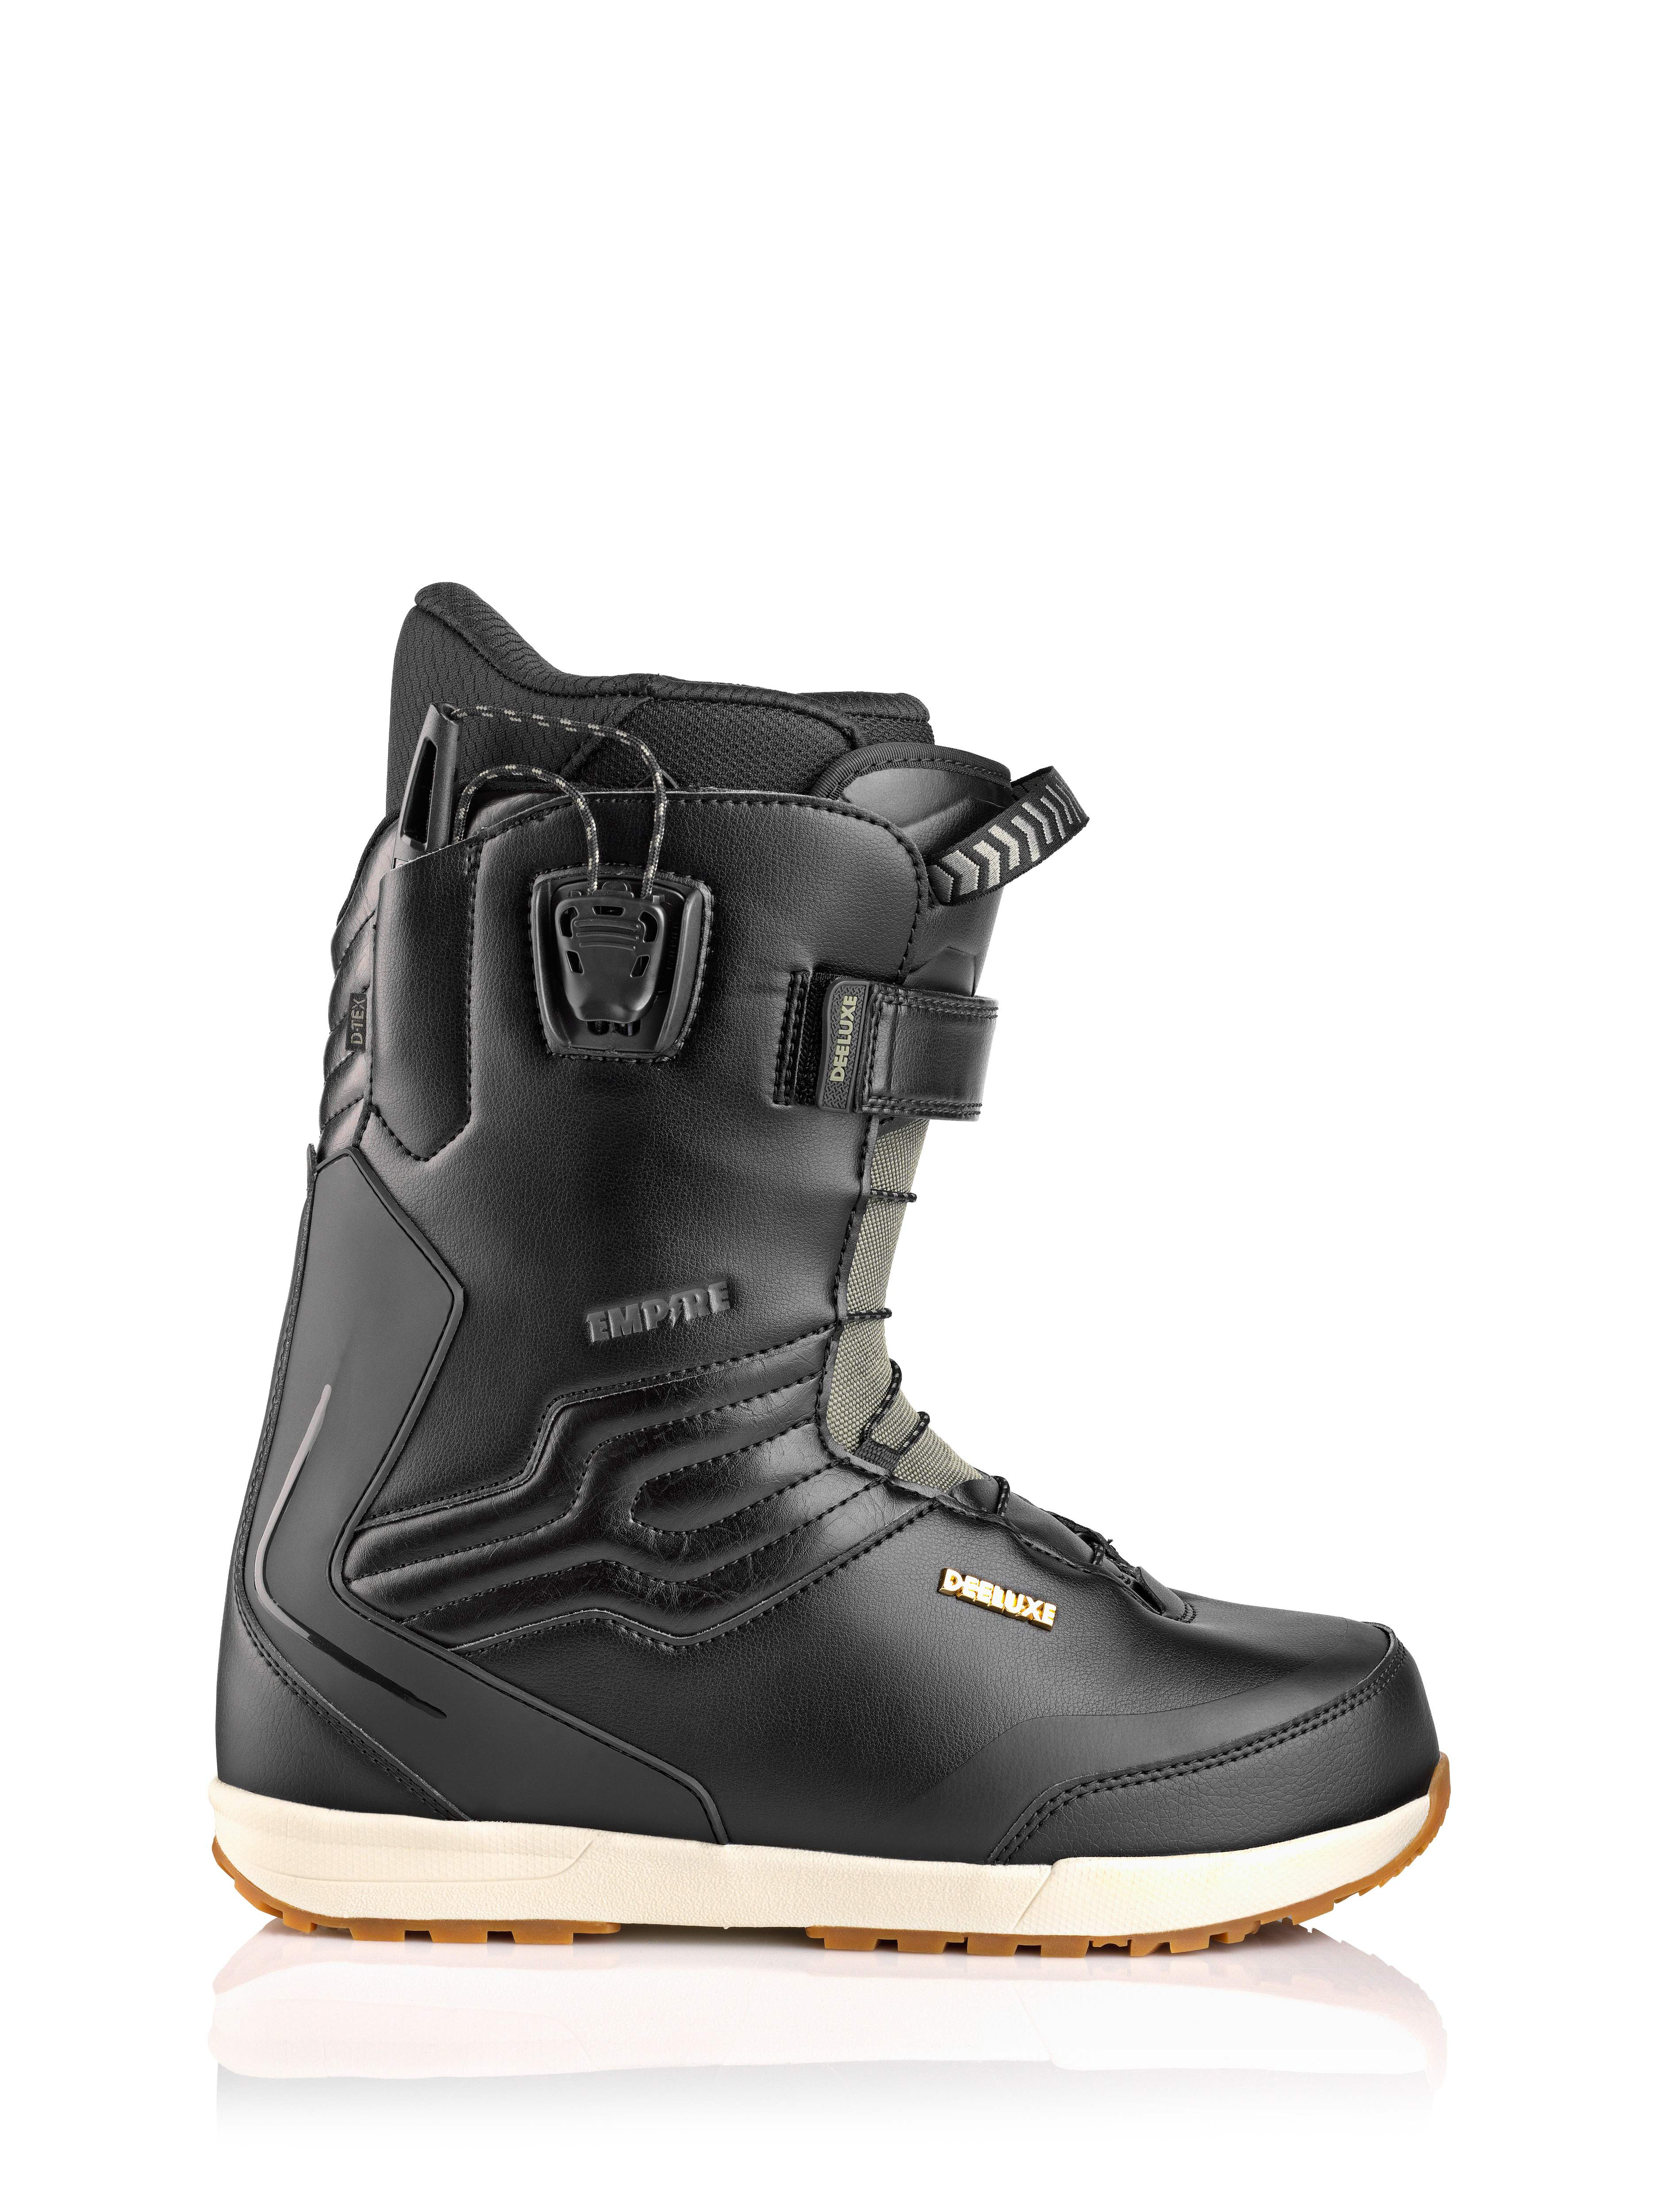 Empire CTF Snowboard boots